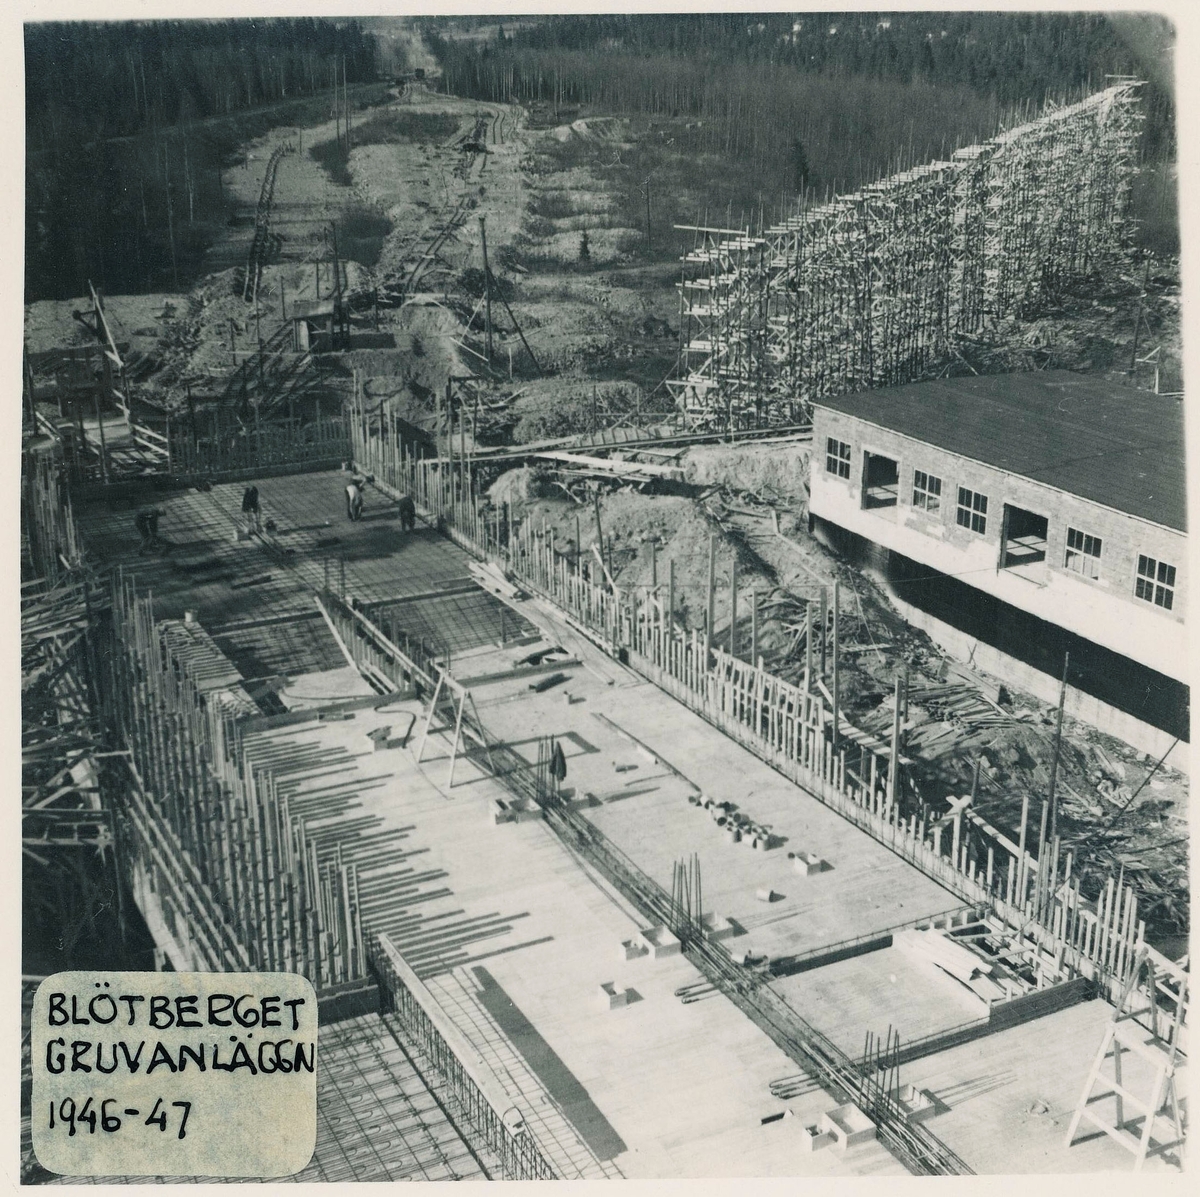 Bergslagsgruvan, Blötberget. Bild dokumentation av gruvanläggning 1946-1948.